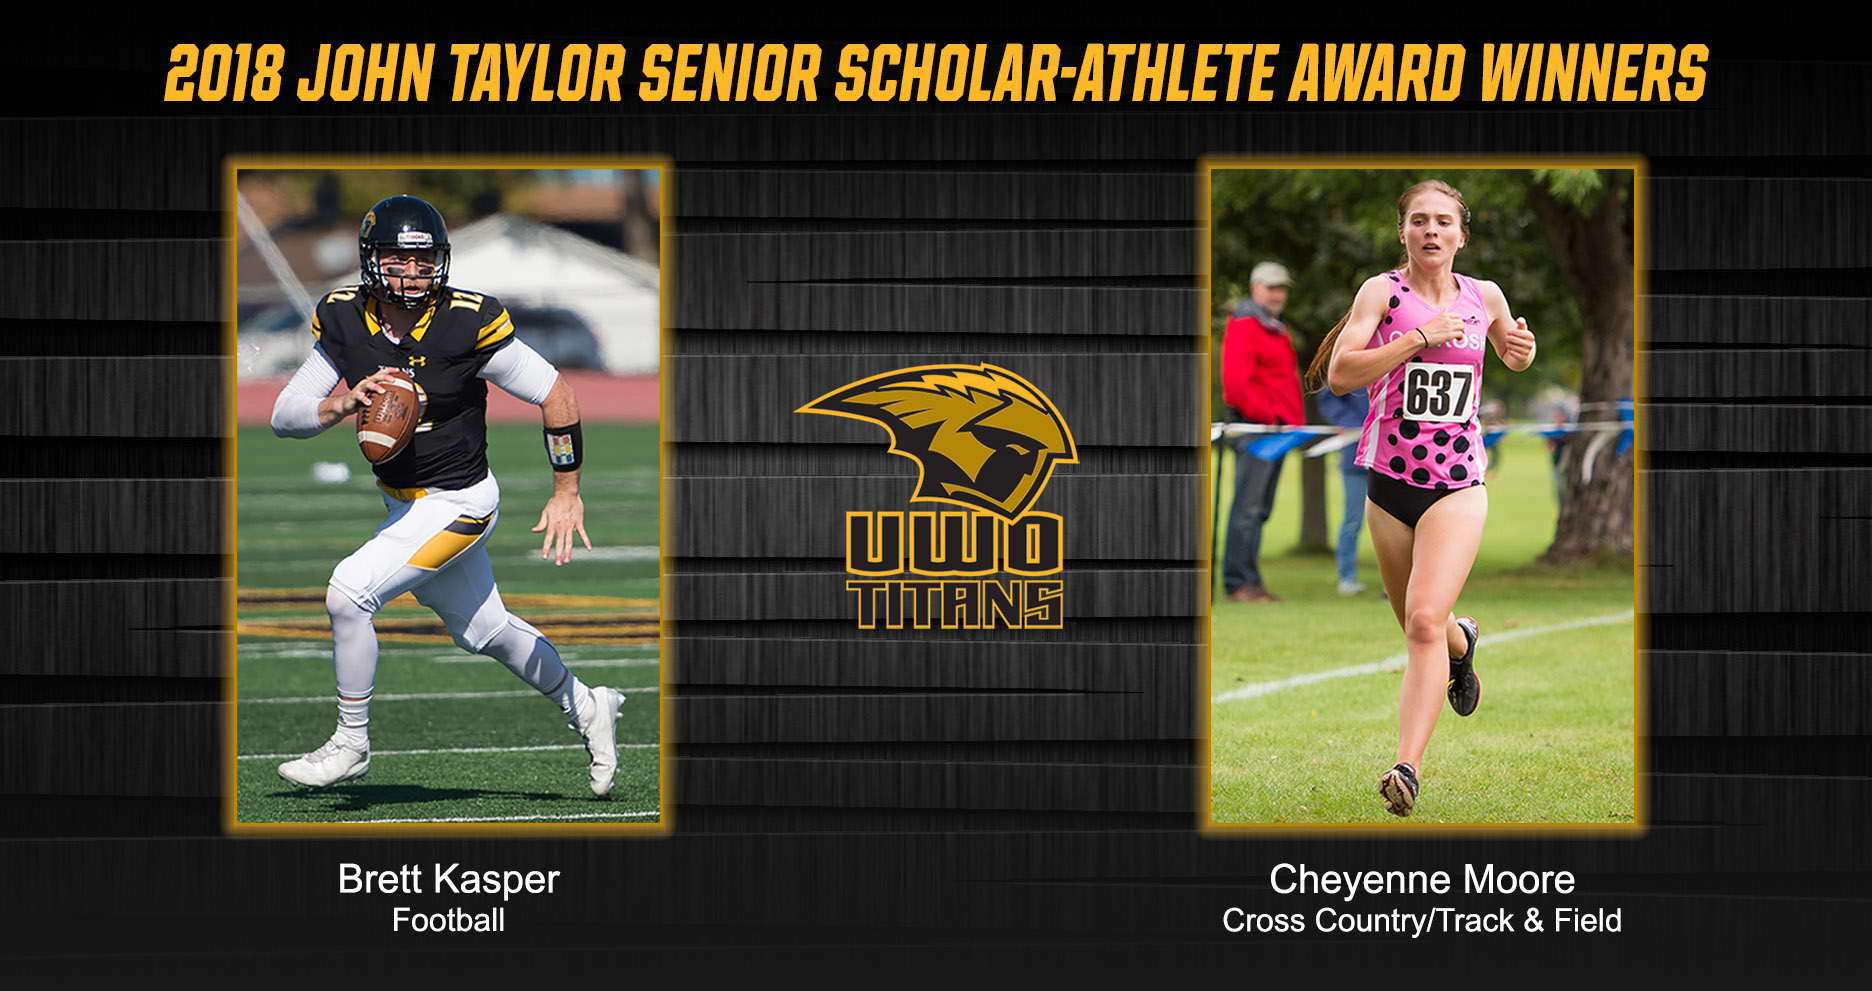 Kasper, Moore Named John Taylor Senior Scholar-Athlete Award Winners